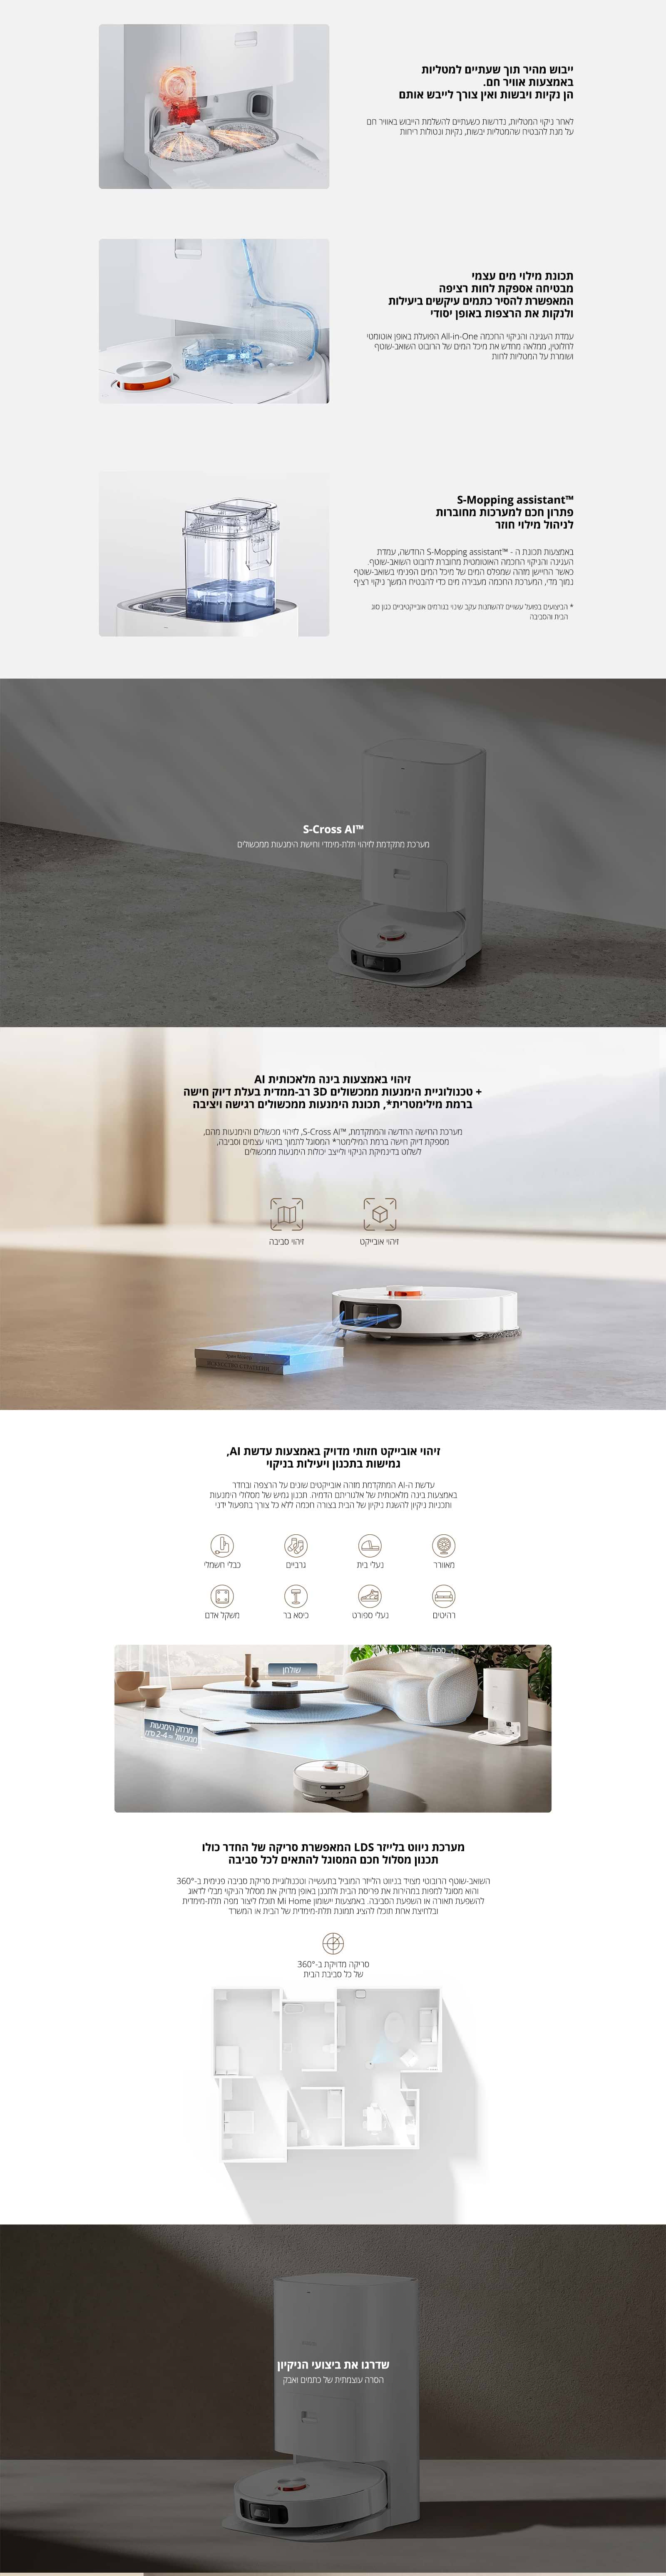 שואב אבק רובוט שוטף Xiaomi Robot Vacuum x10 Plus - שנתיים אחריות ע"י היבואן הרשמי